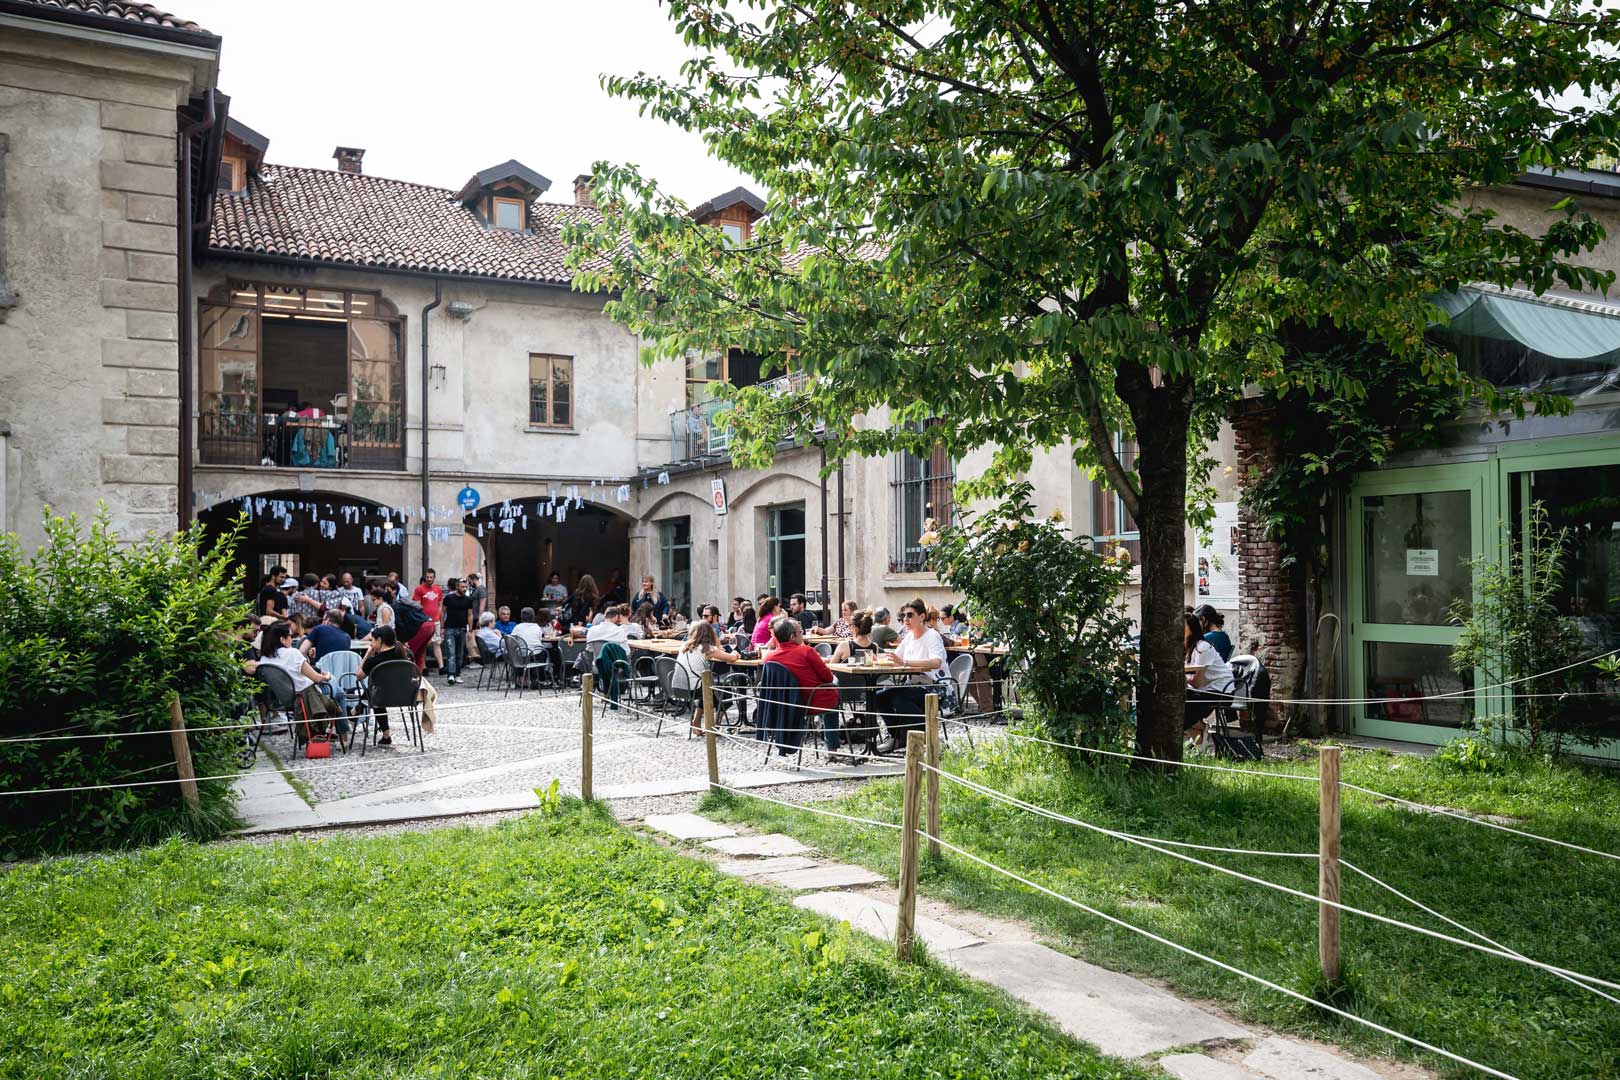 5 locali in Porta Romana dove bere bene - Milano